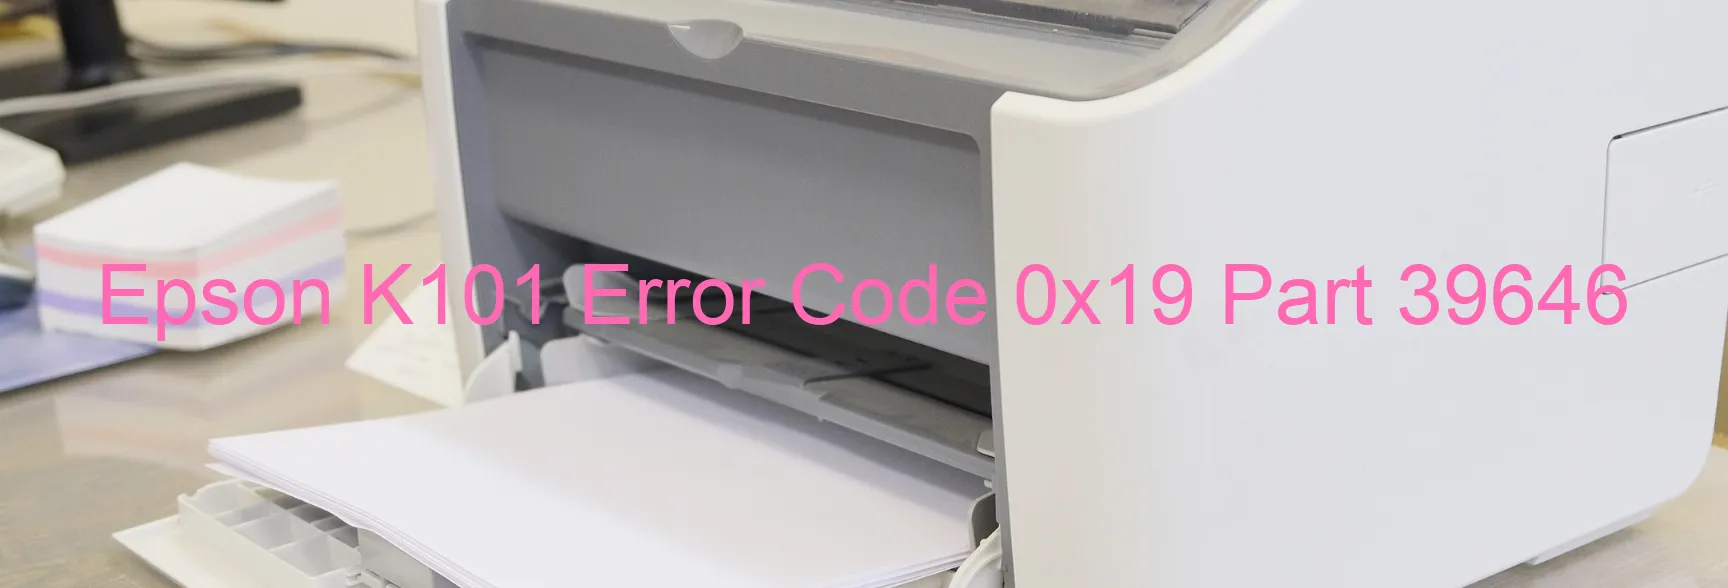 Epson K101 Error Code 0x19 Part 39646